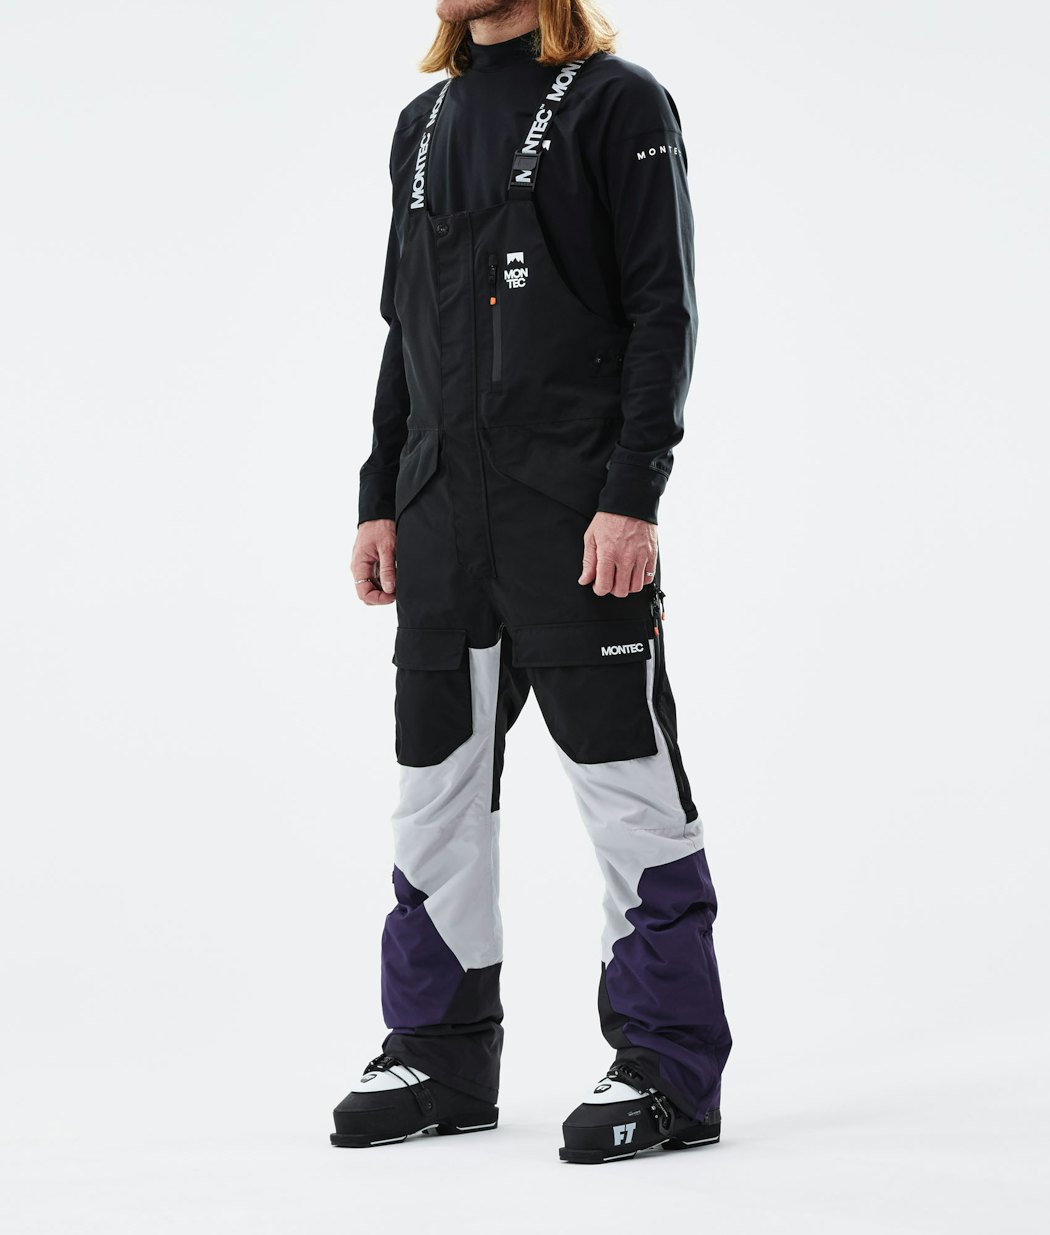 Fawk 2021 Ski Pants Men Black/Light Grey/Purple